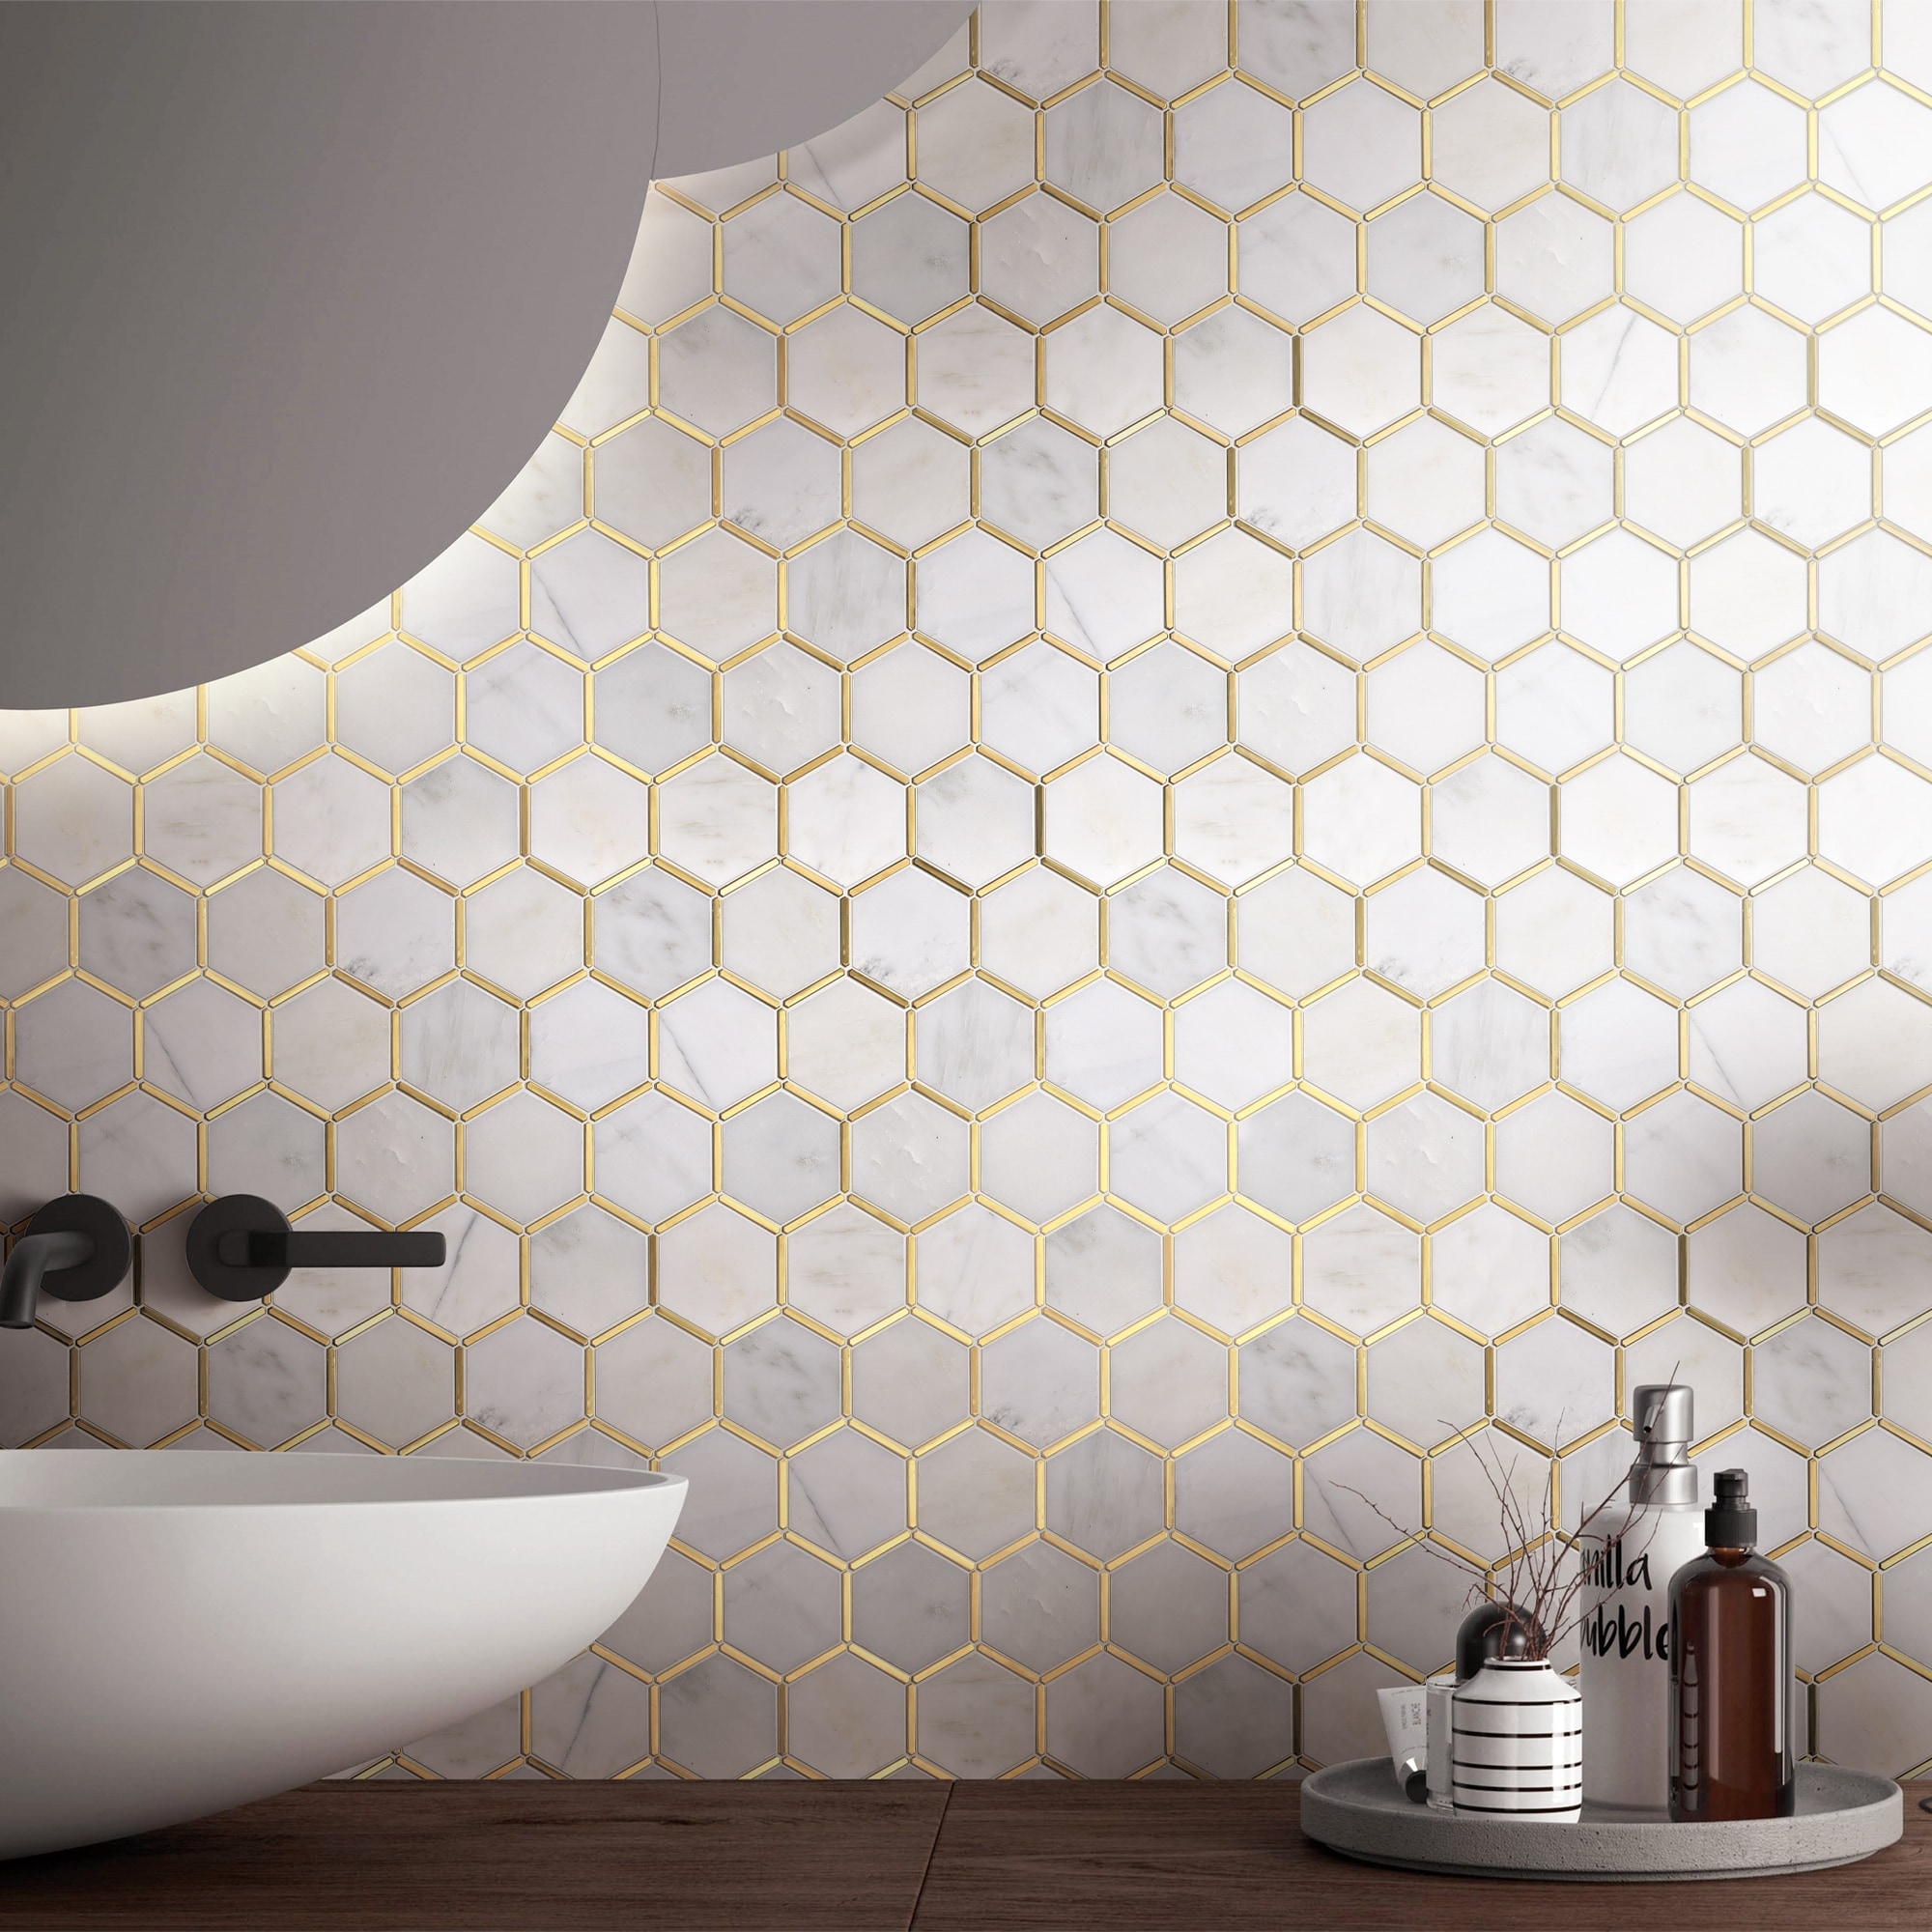 SMART TILES Peel and Stick Backsplash - Sheets of 10.95 x 9.70 - 3D  Adhesive Peel and Stick Tile Backsplash for Kitchen, Bathroom, Wall Tile  (Beige